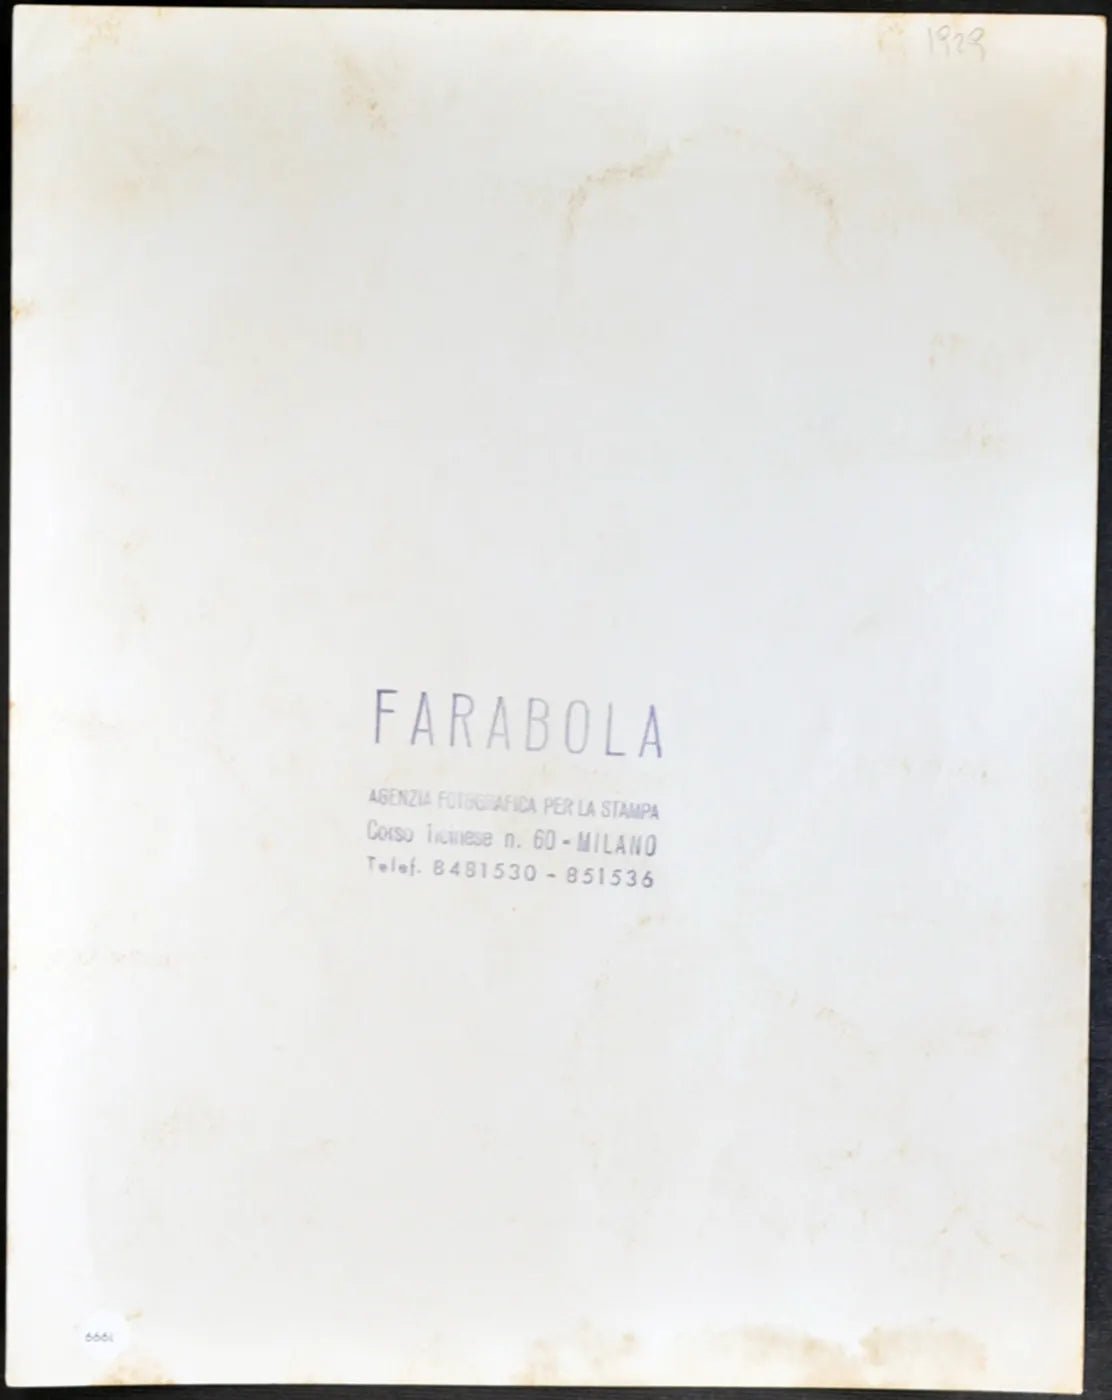 Spazzacamini Milano anni 50 Ft 1999 - Stampa 21x27 cm - Farabola Stampa ai sali d'argento